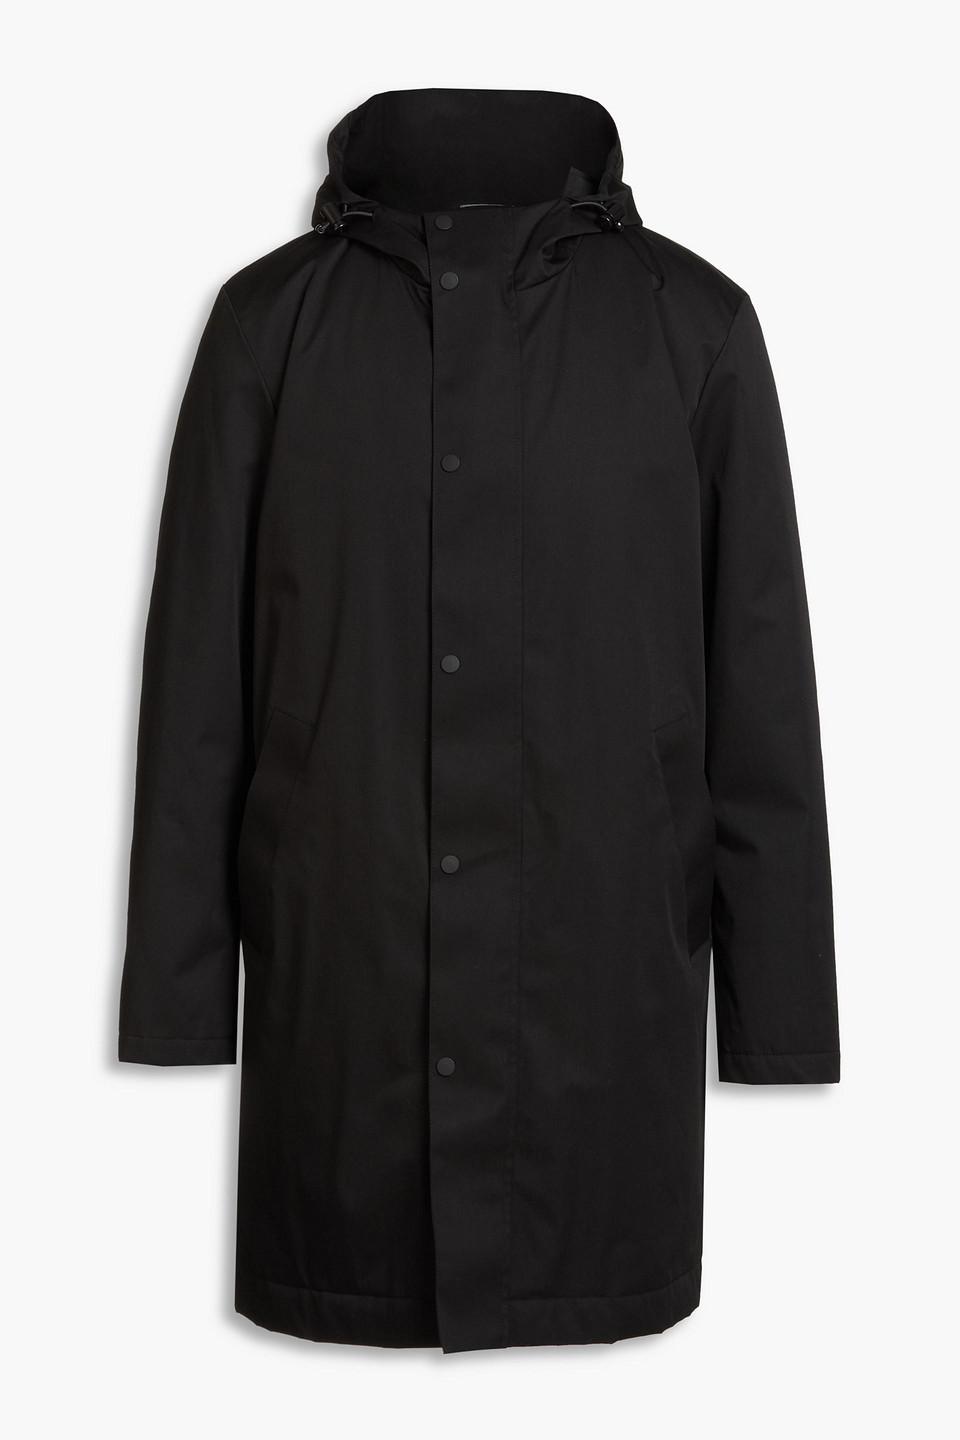 Sandro Gabardine Hooded Raincoat in Black for Men | Lyst UK